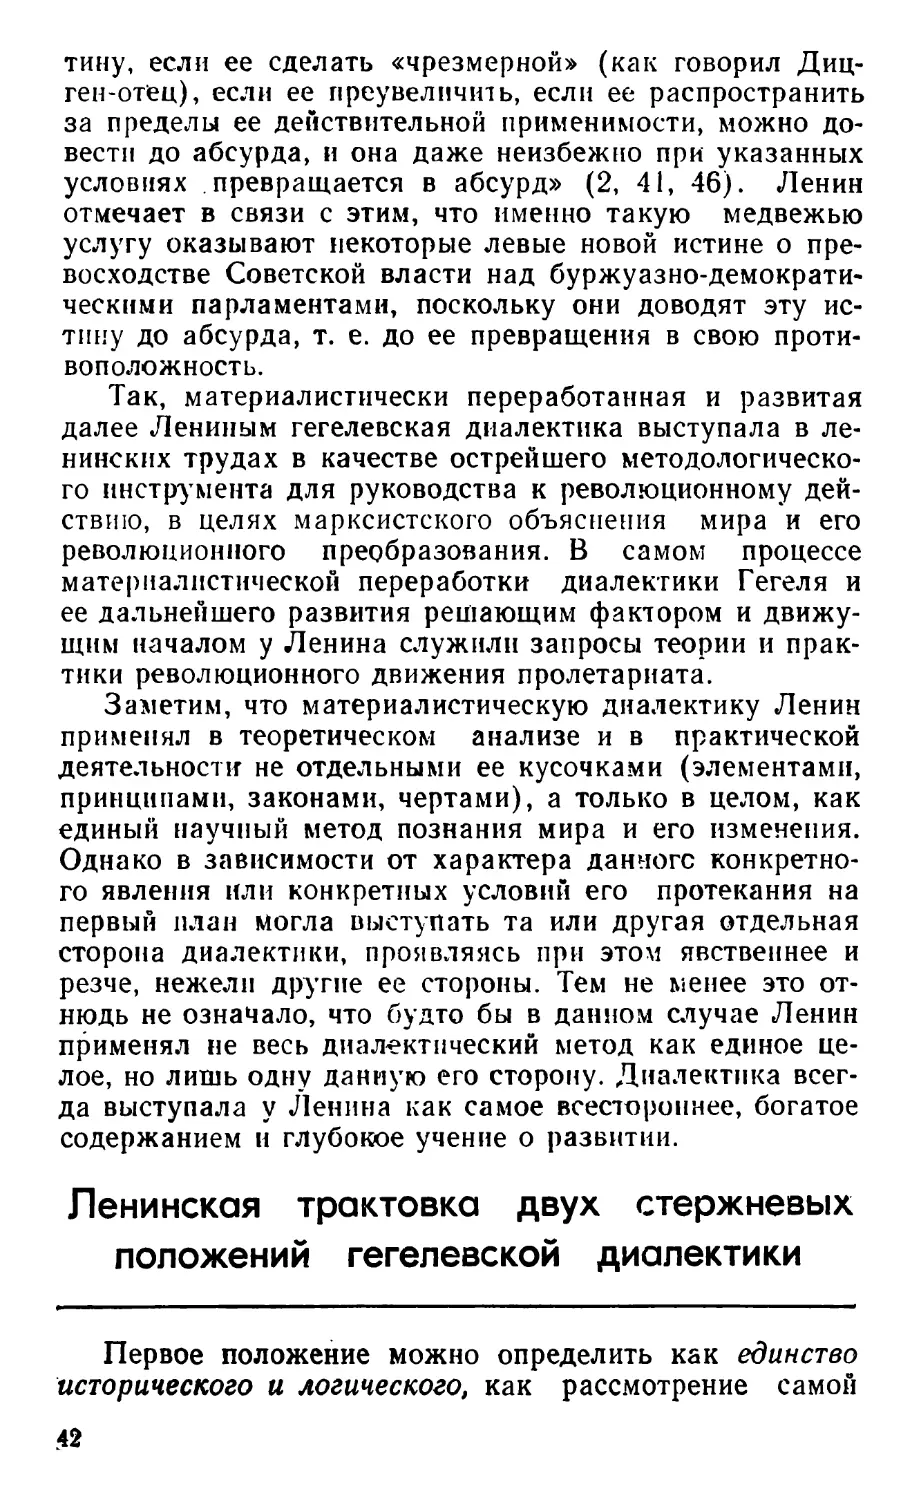 Ленинская трактовка двух стержневых положений гегелевской диалектики